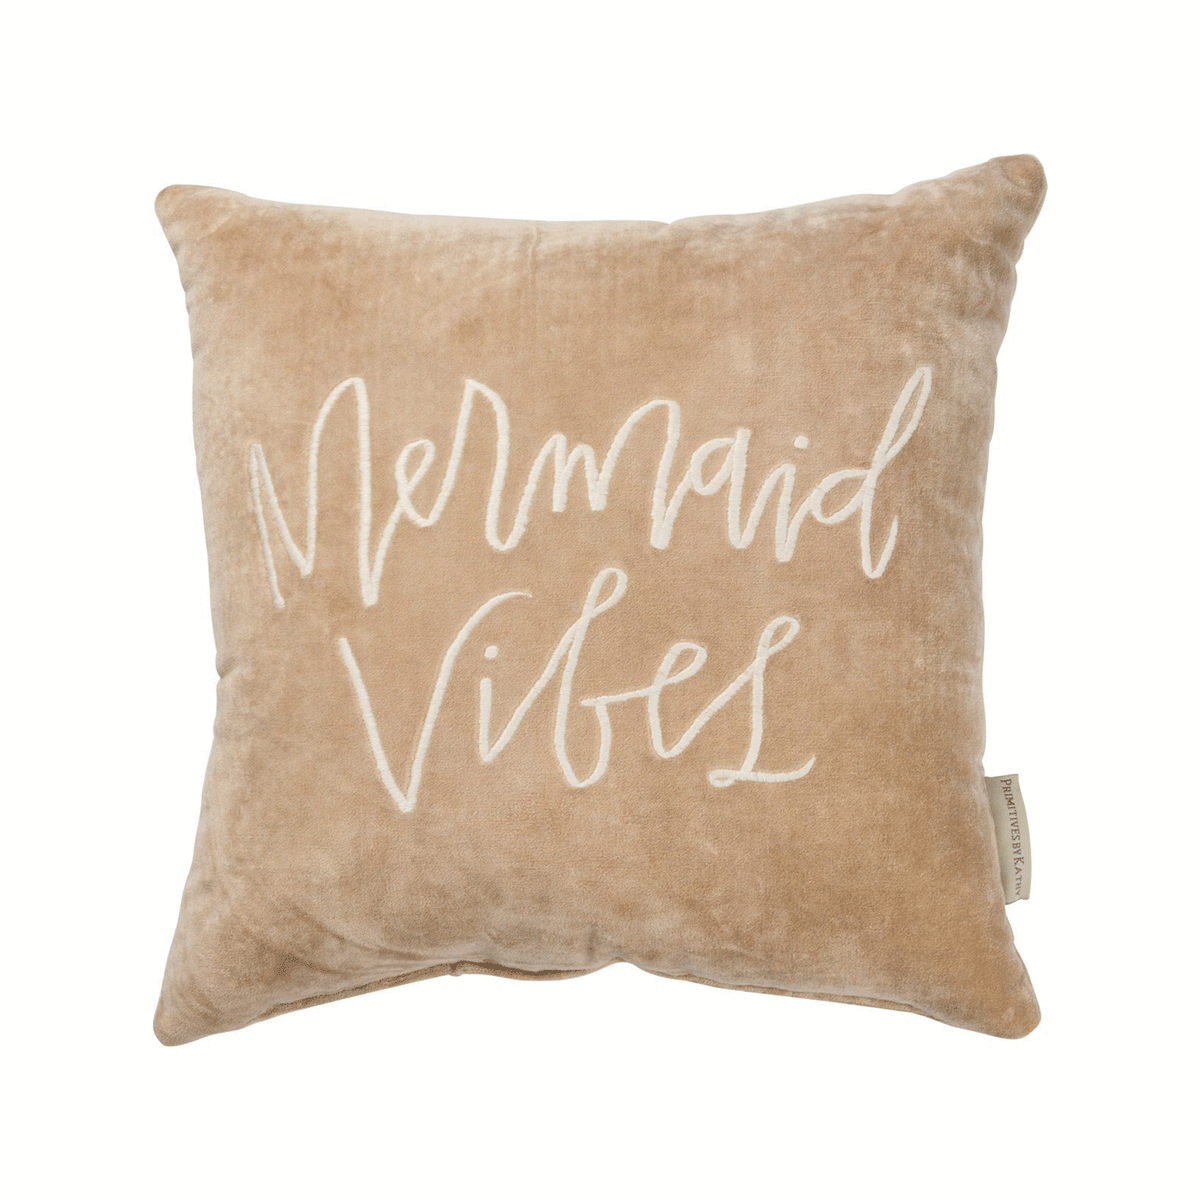 Mermaid Vibes Velvet Pillow - Pillows & Blankets